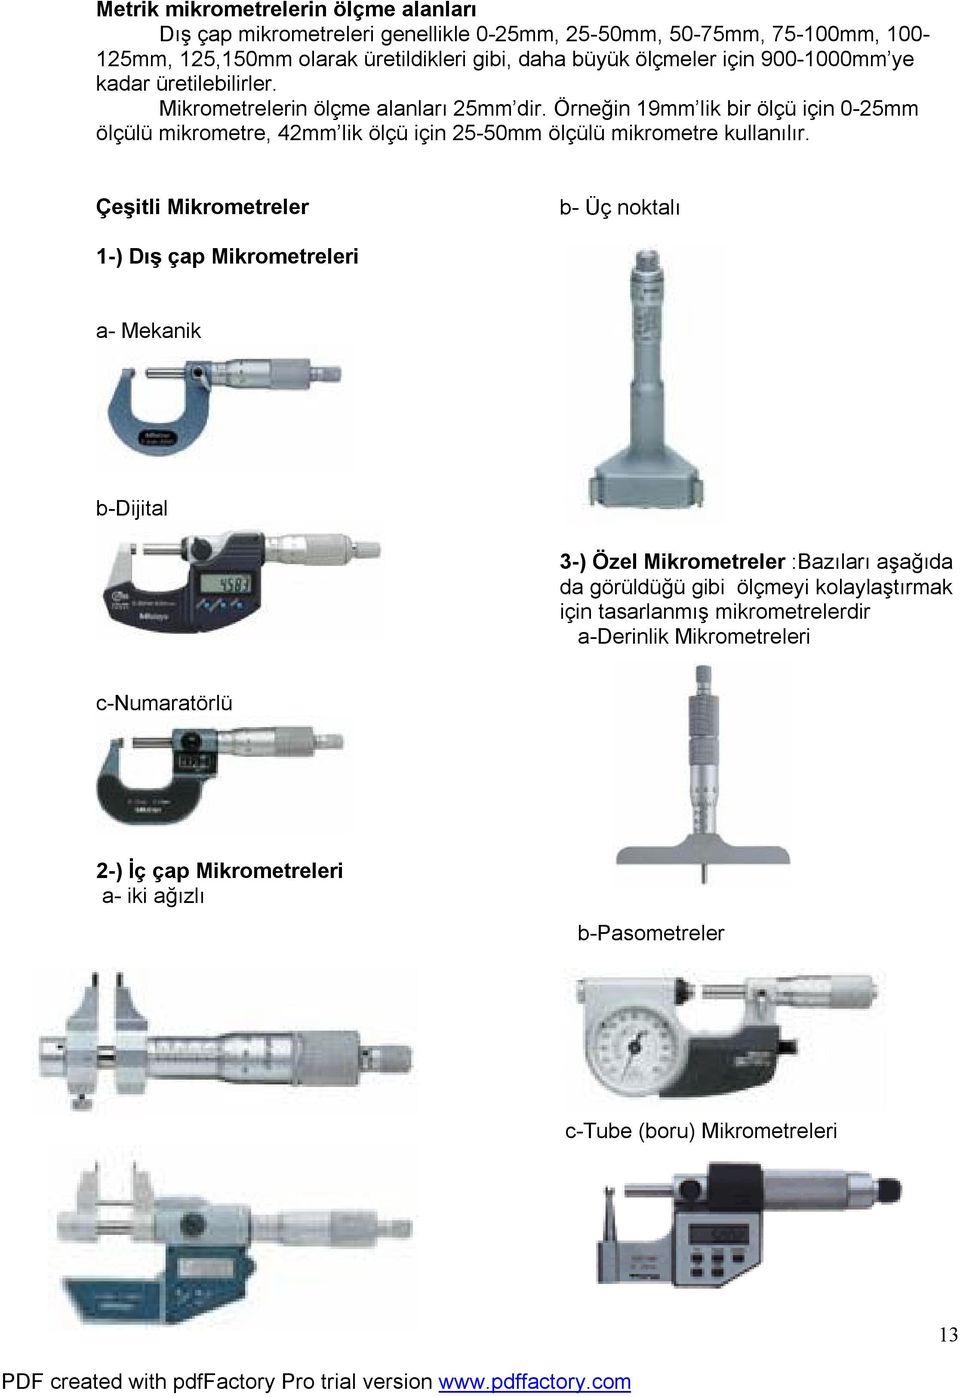 Örneğin 19mm lik bir ölçü için 0-25mm ölçülü mikrometre, 42mm lik ölçü için 25-50mm ölçülü mikrometre kullanılır.